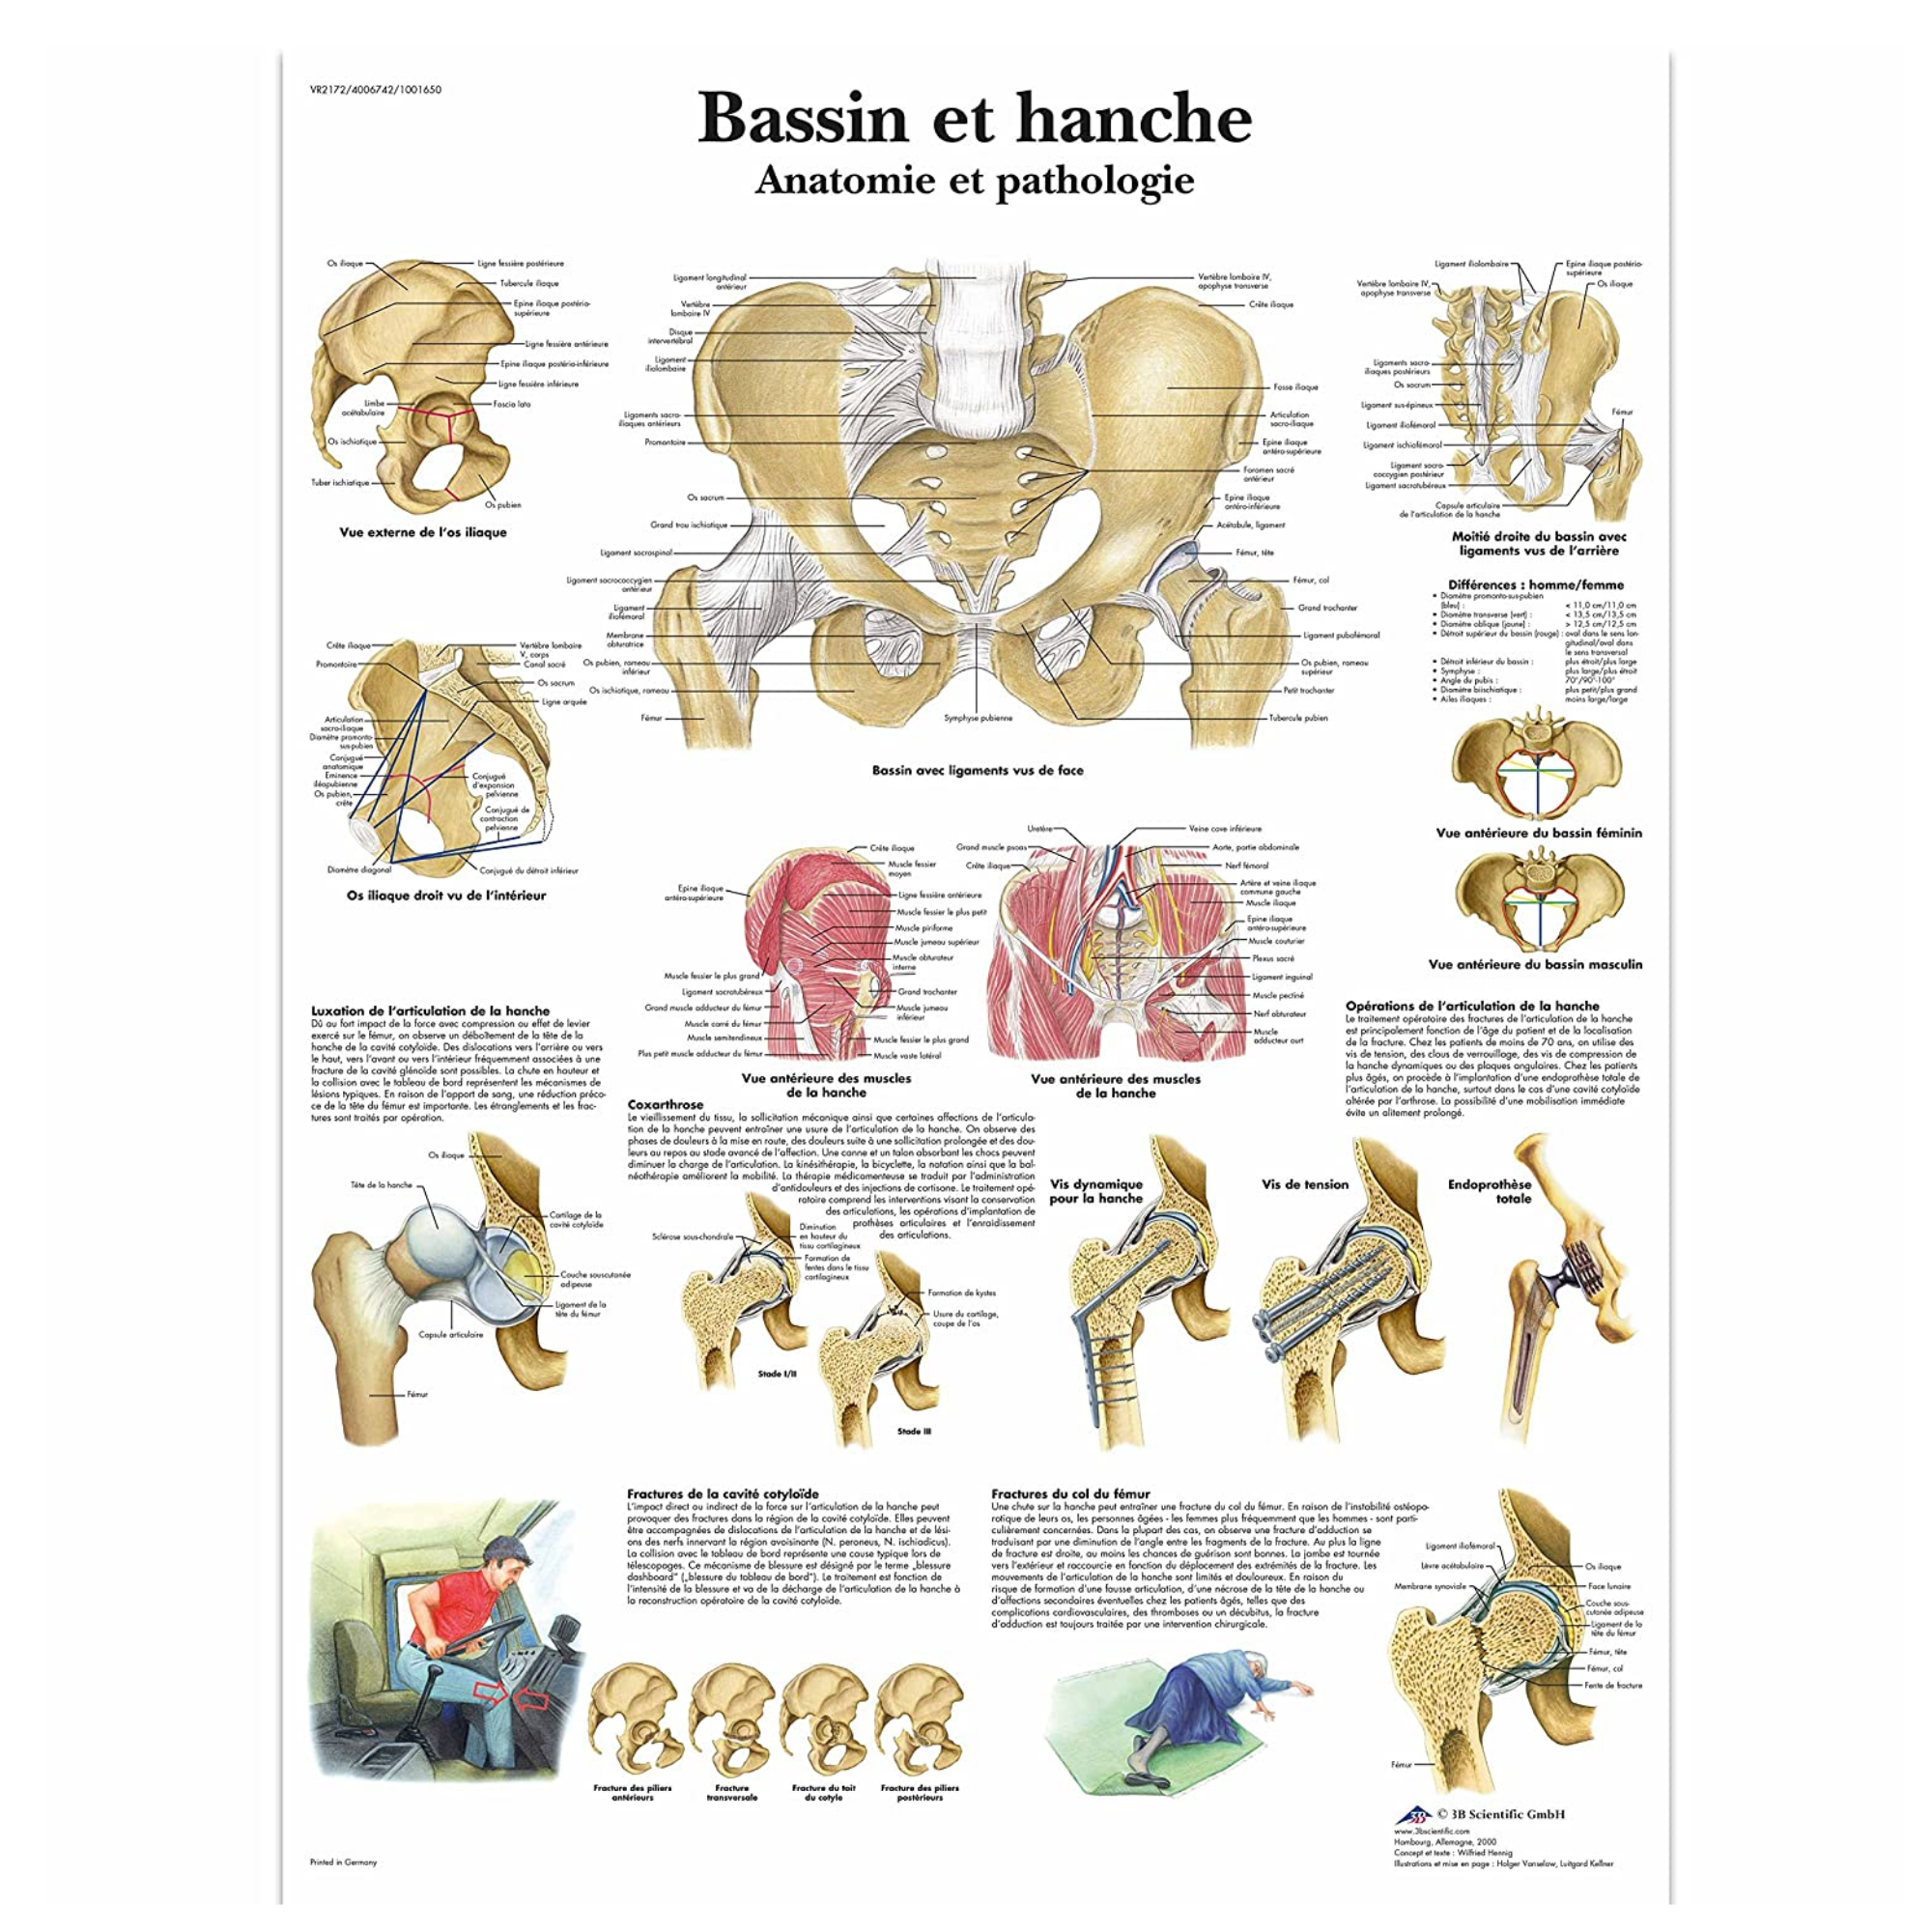 Planche anatomique - Bassin et hanche - Anatomie et pathologie - 3B Scientific